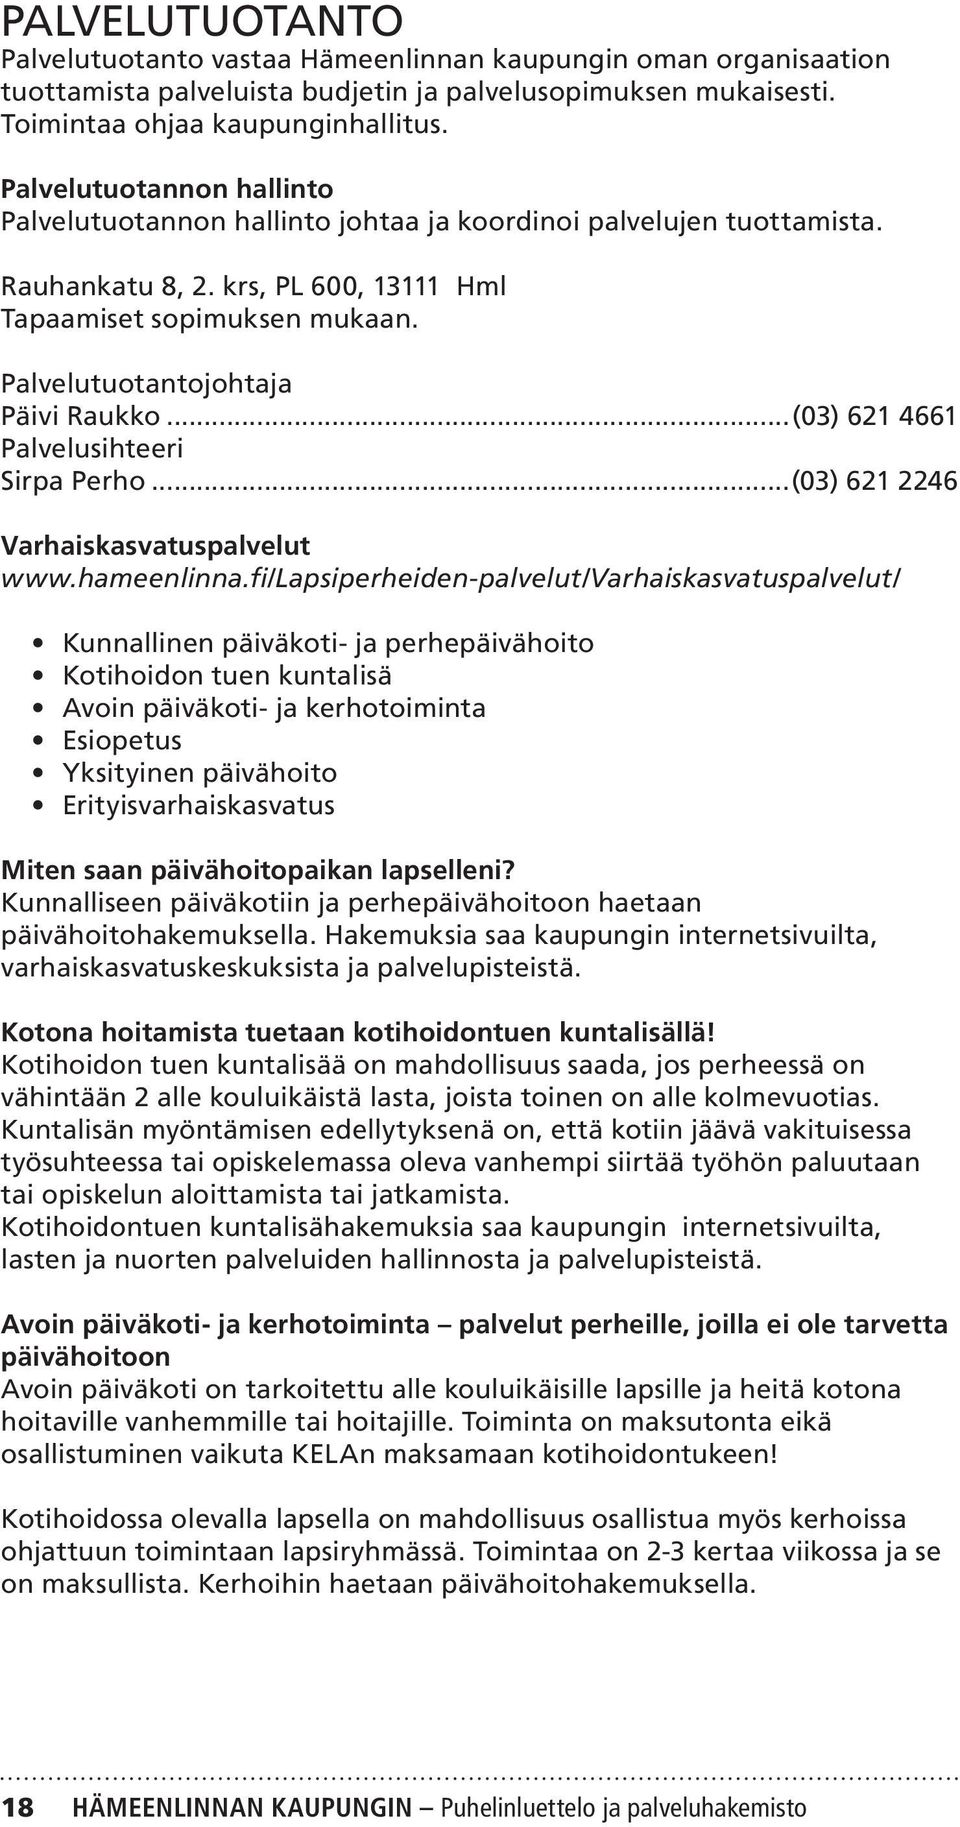 Palvelutuotantojohtaja Päivi Raukko...(03) 621 4661 Palvelusihteeri Sirpa Perho...(03) 621 2246 Varhaiskasvatuspalvelut www.hameenlinna.